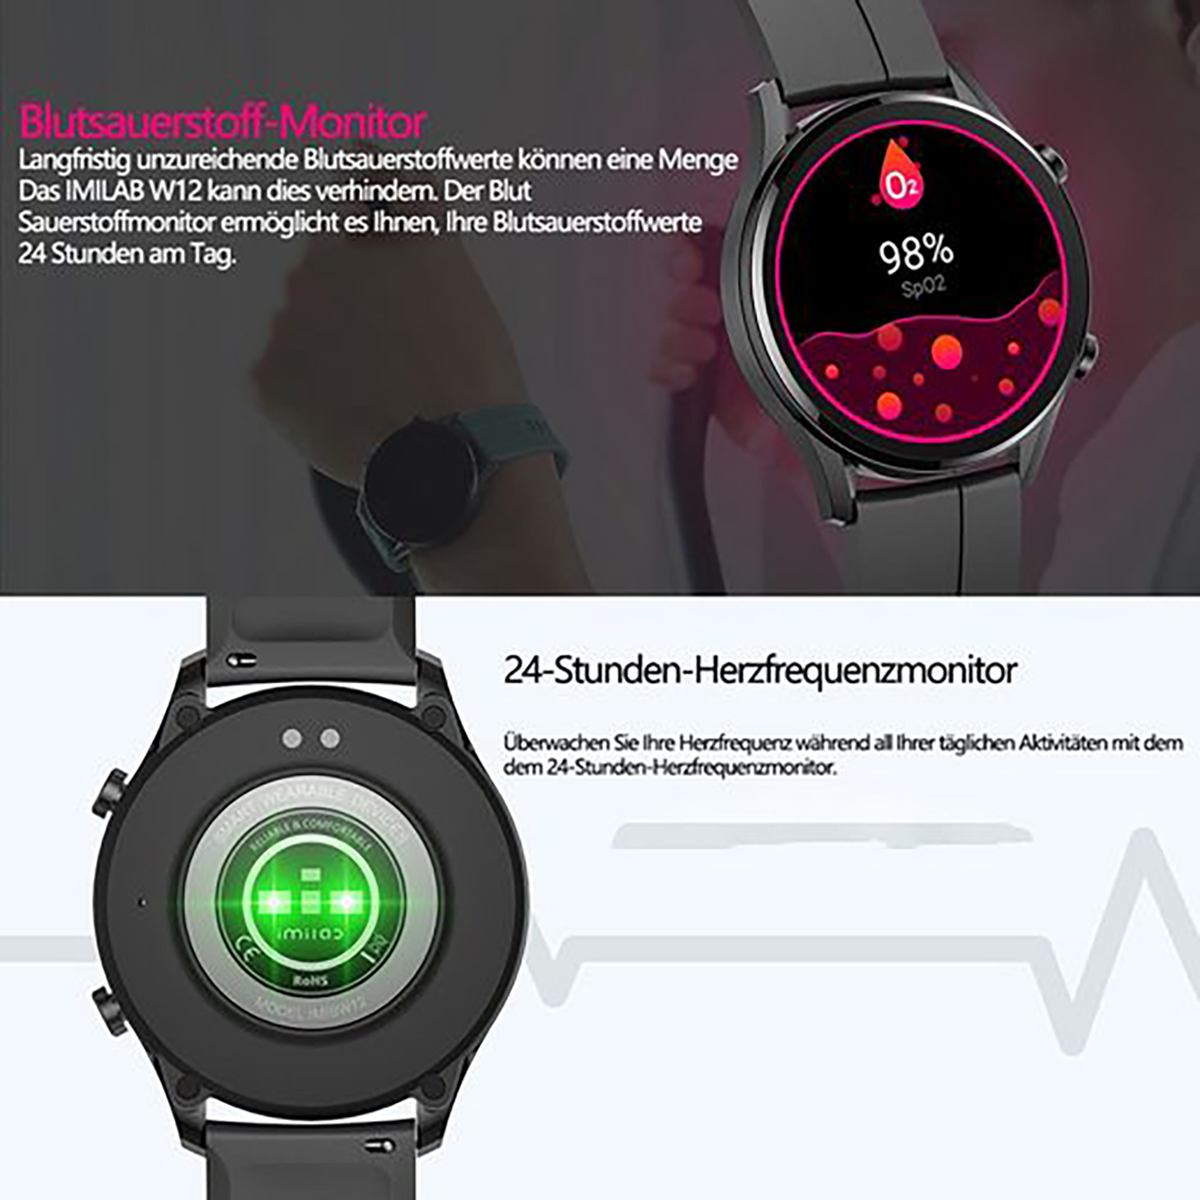 PRO ZNSB FINE 2 Schwarz LIFE 6 Gummi, Smartwatch